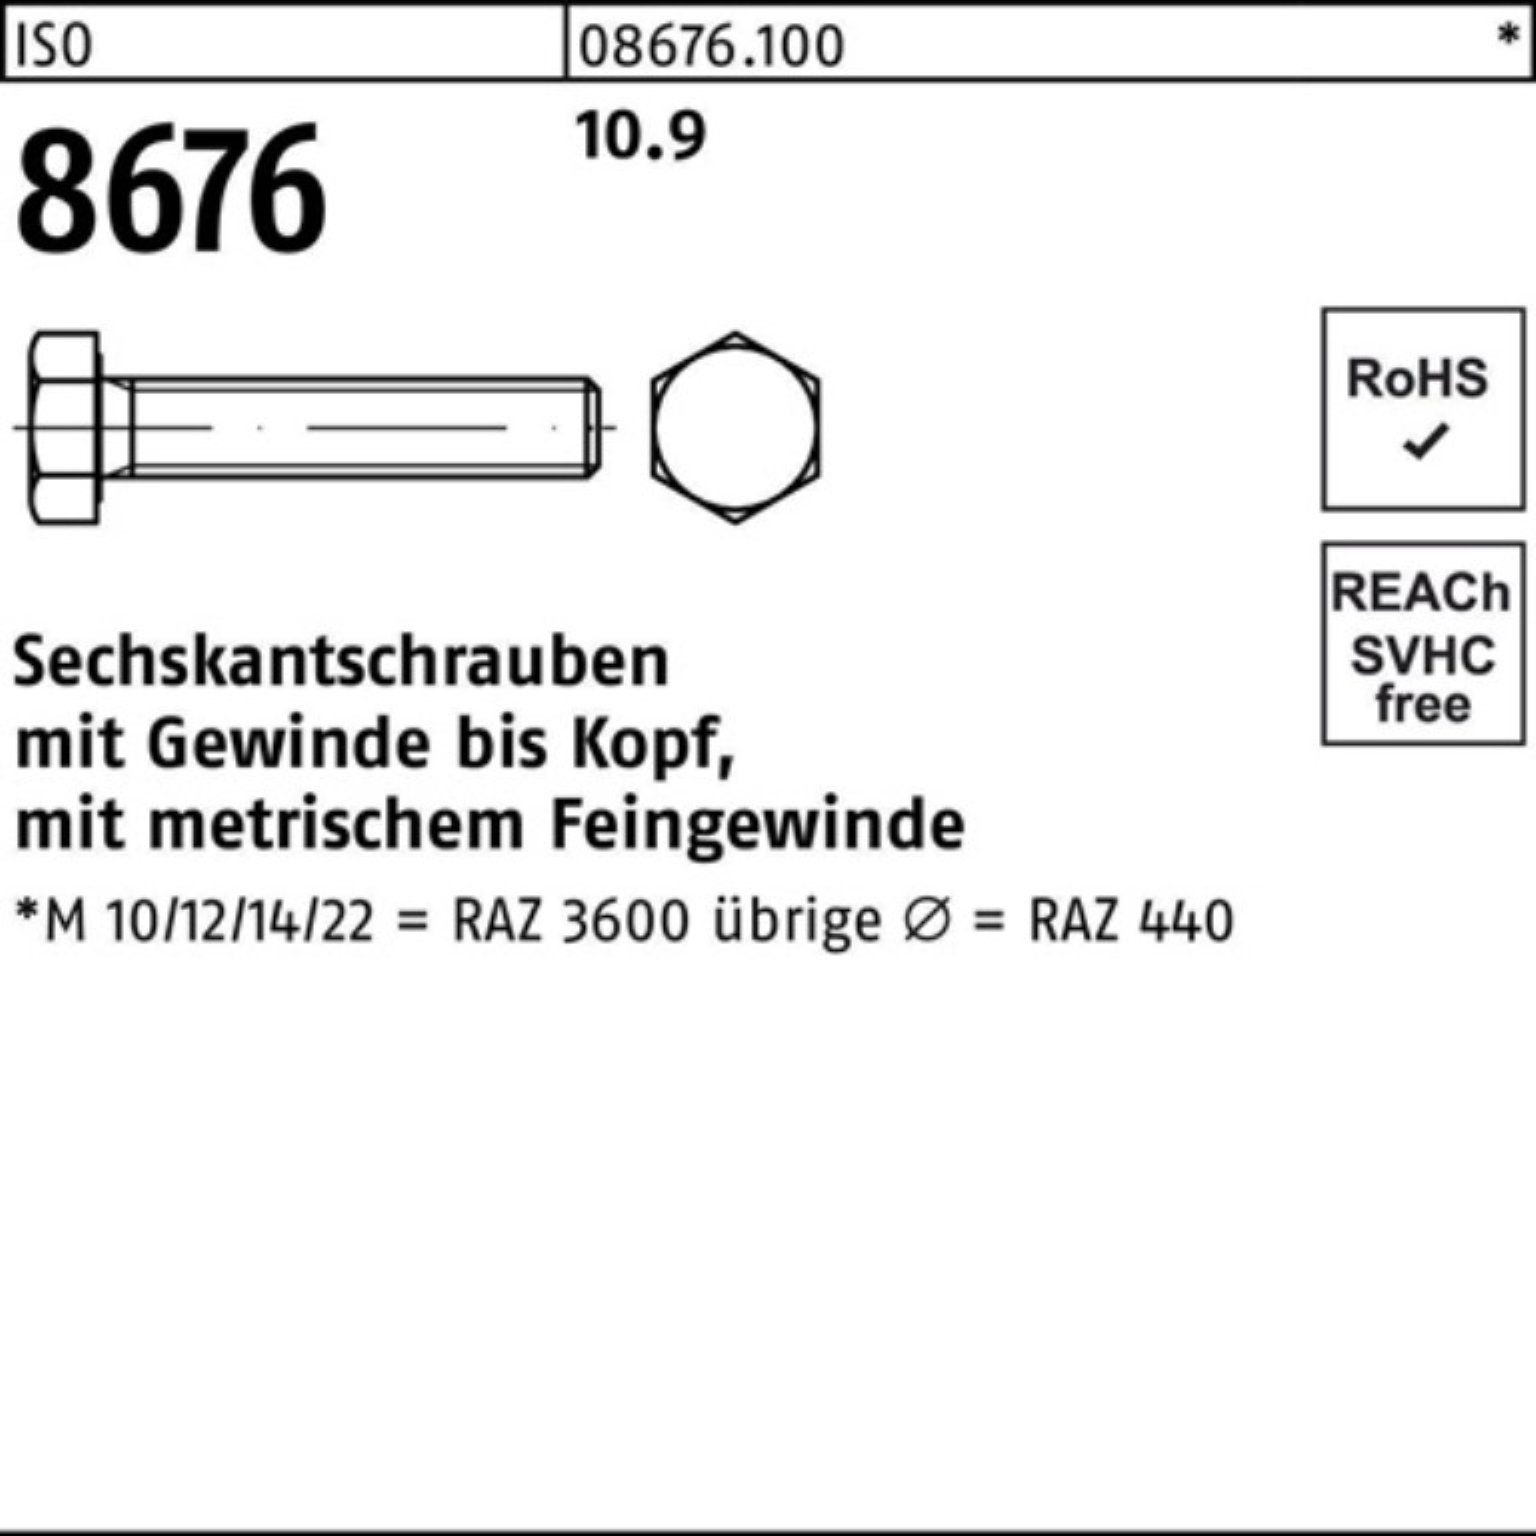 Reyher Sechskantschraube 100er M10x1,25x 10.9 ISO Sechskantschraube VG 100 8676 Pack 90 Stück